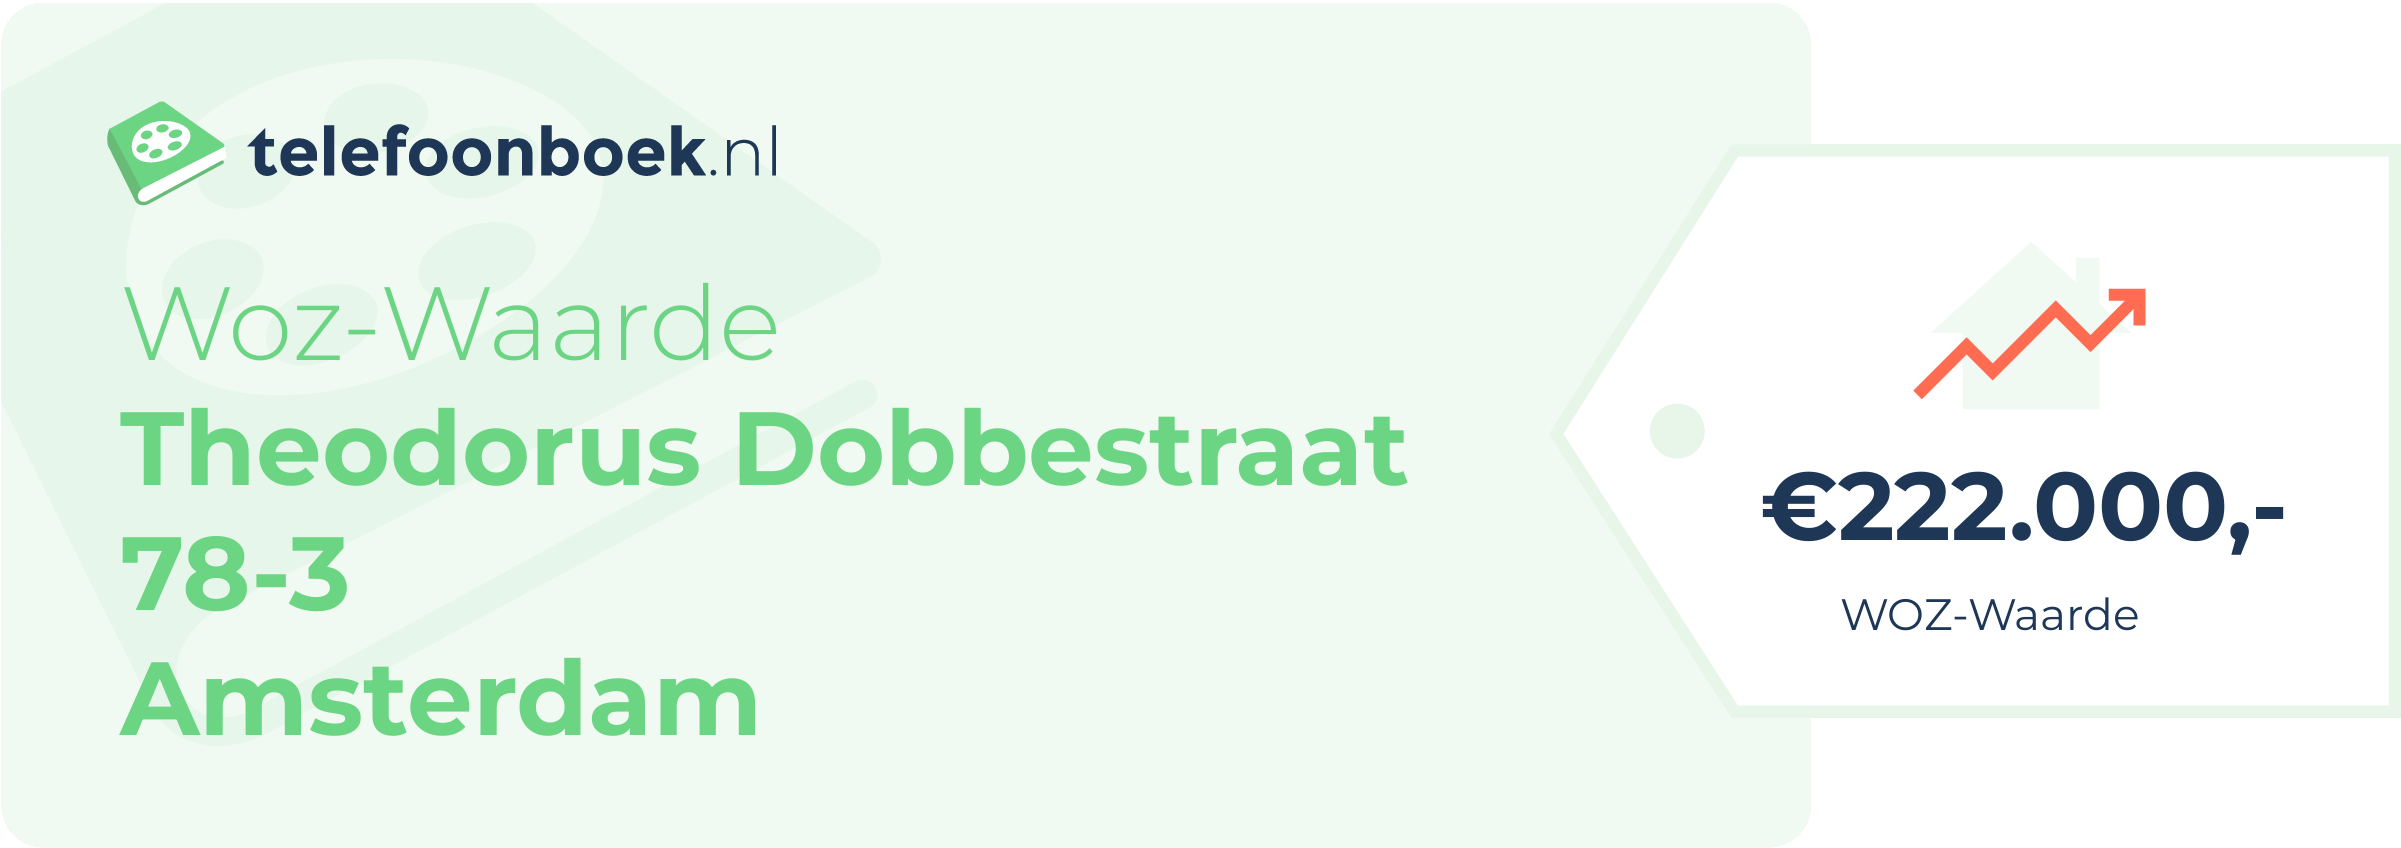 WOZ-waarde Theodorus Dobbestraat 78-3 Amsterdam